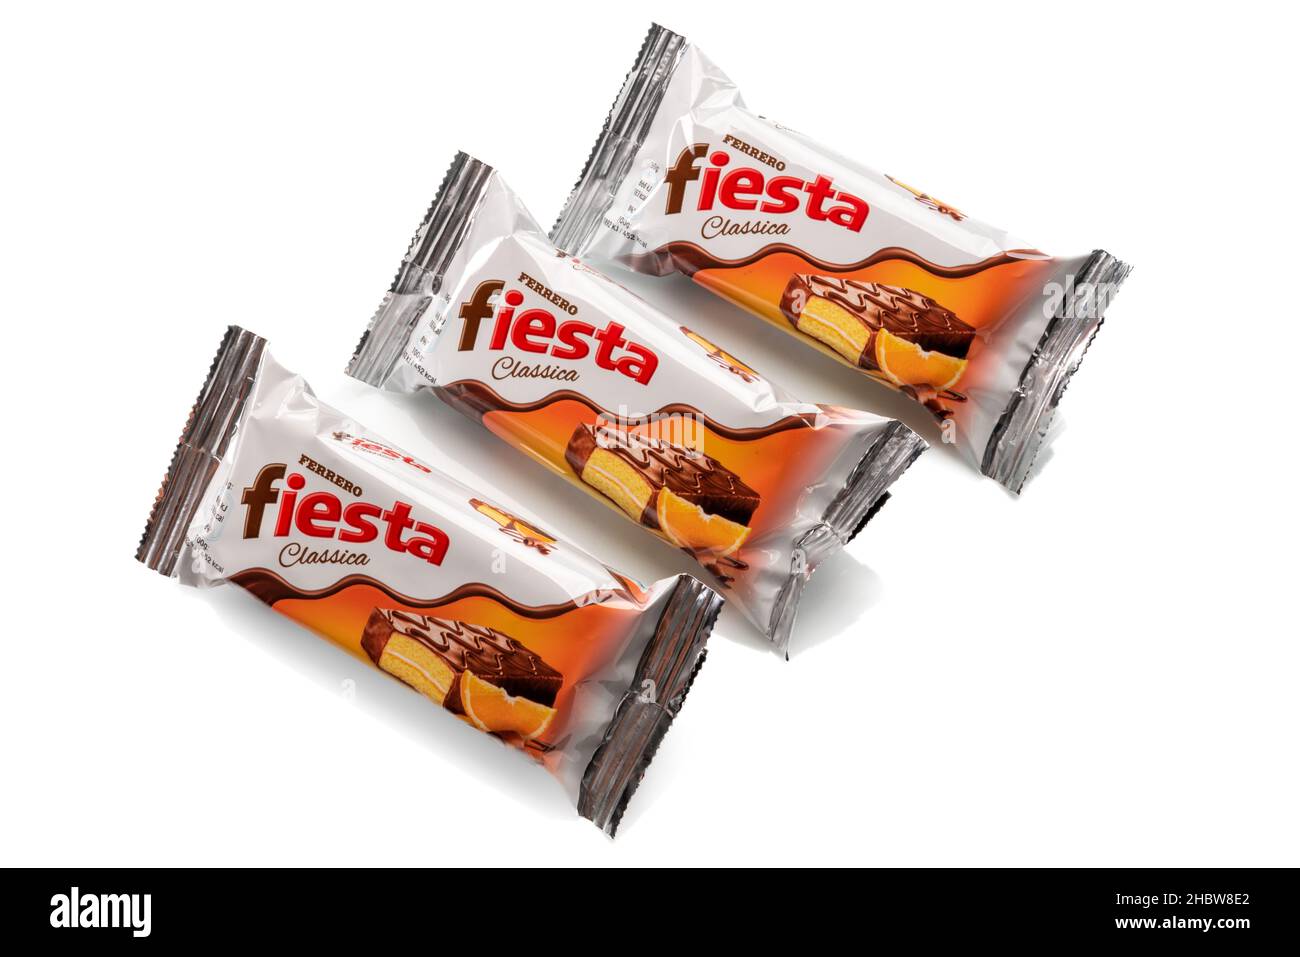 Alba, Italie - 21 décembre 2021 : collation au chocolat Fiesta Ferrero pour les enfants.Trois paquets isolés sur blanc.Ferrero est une usine de confiserie mondialement connue Banque D'Images